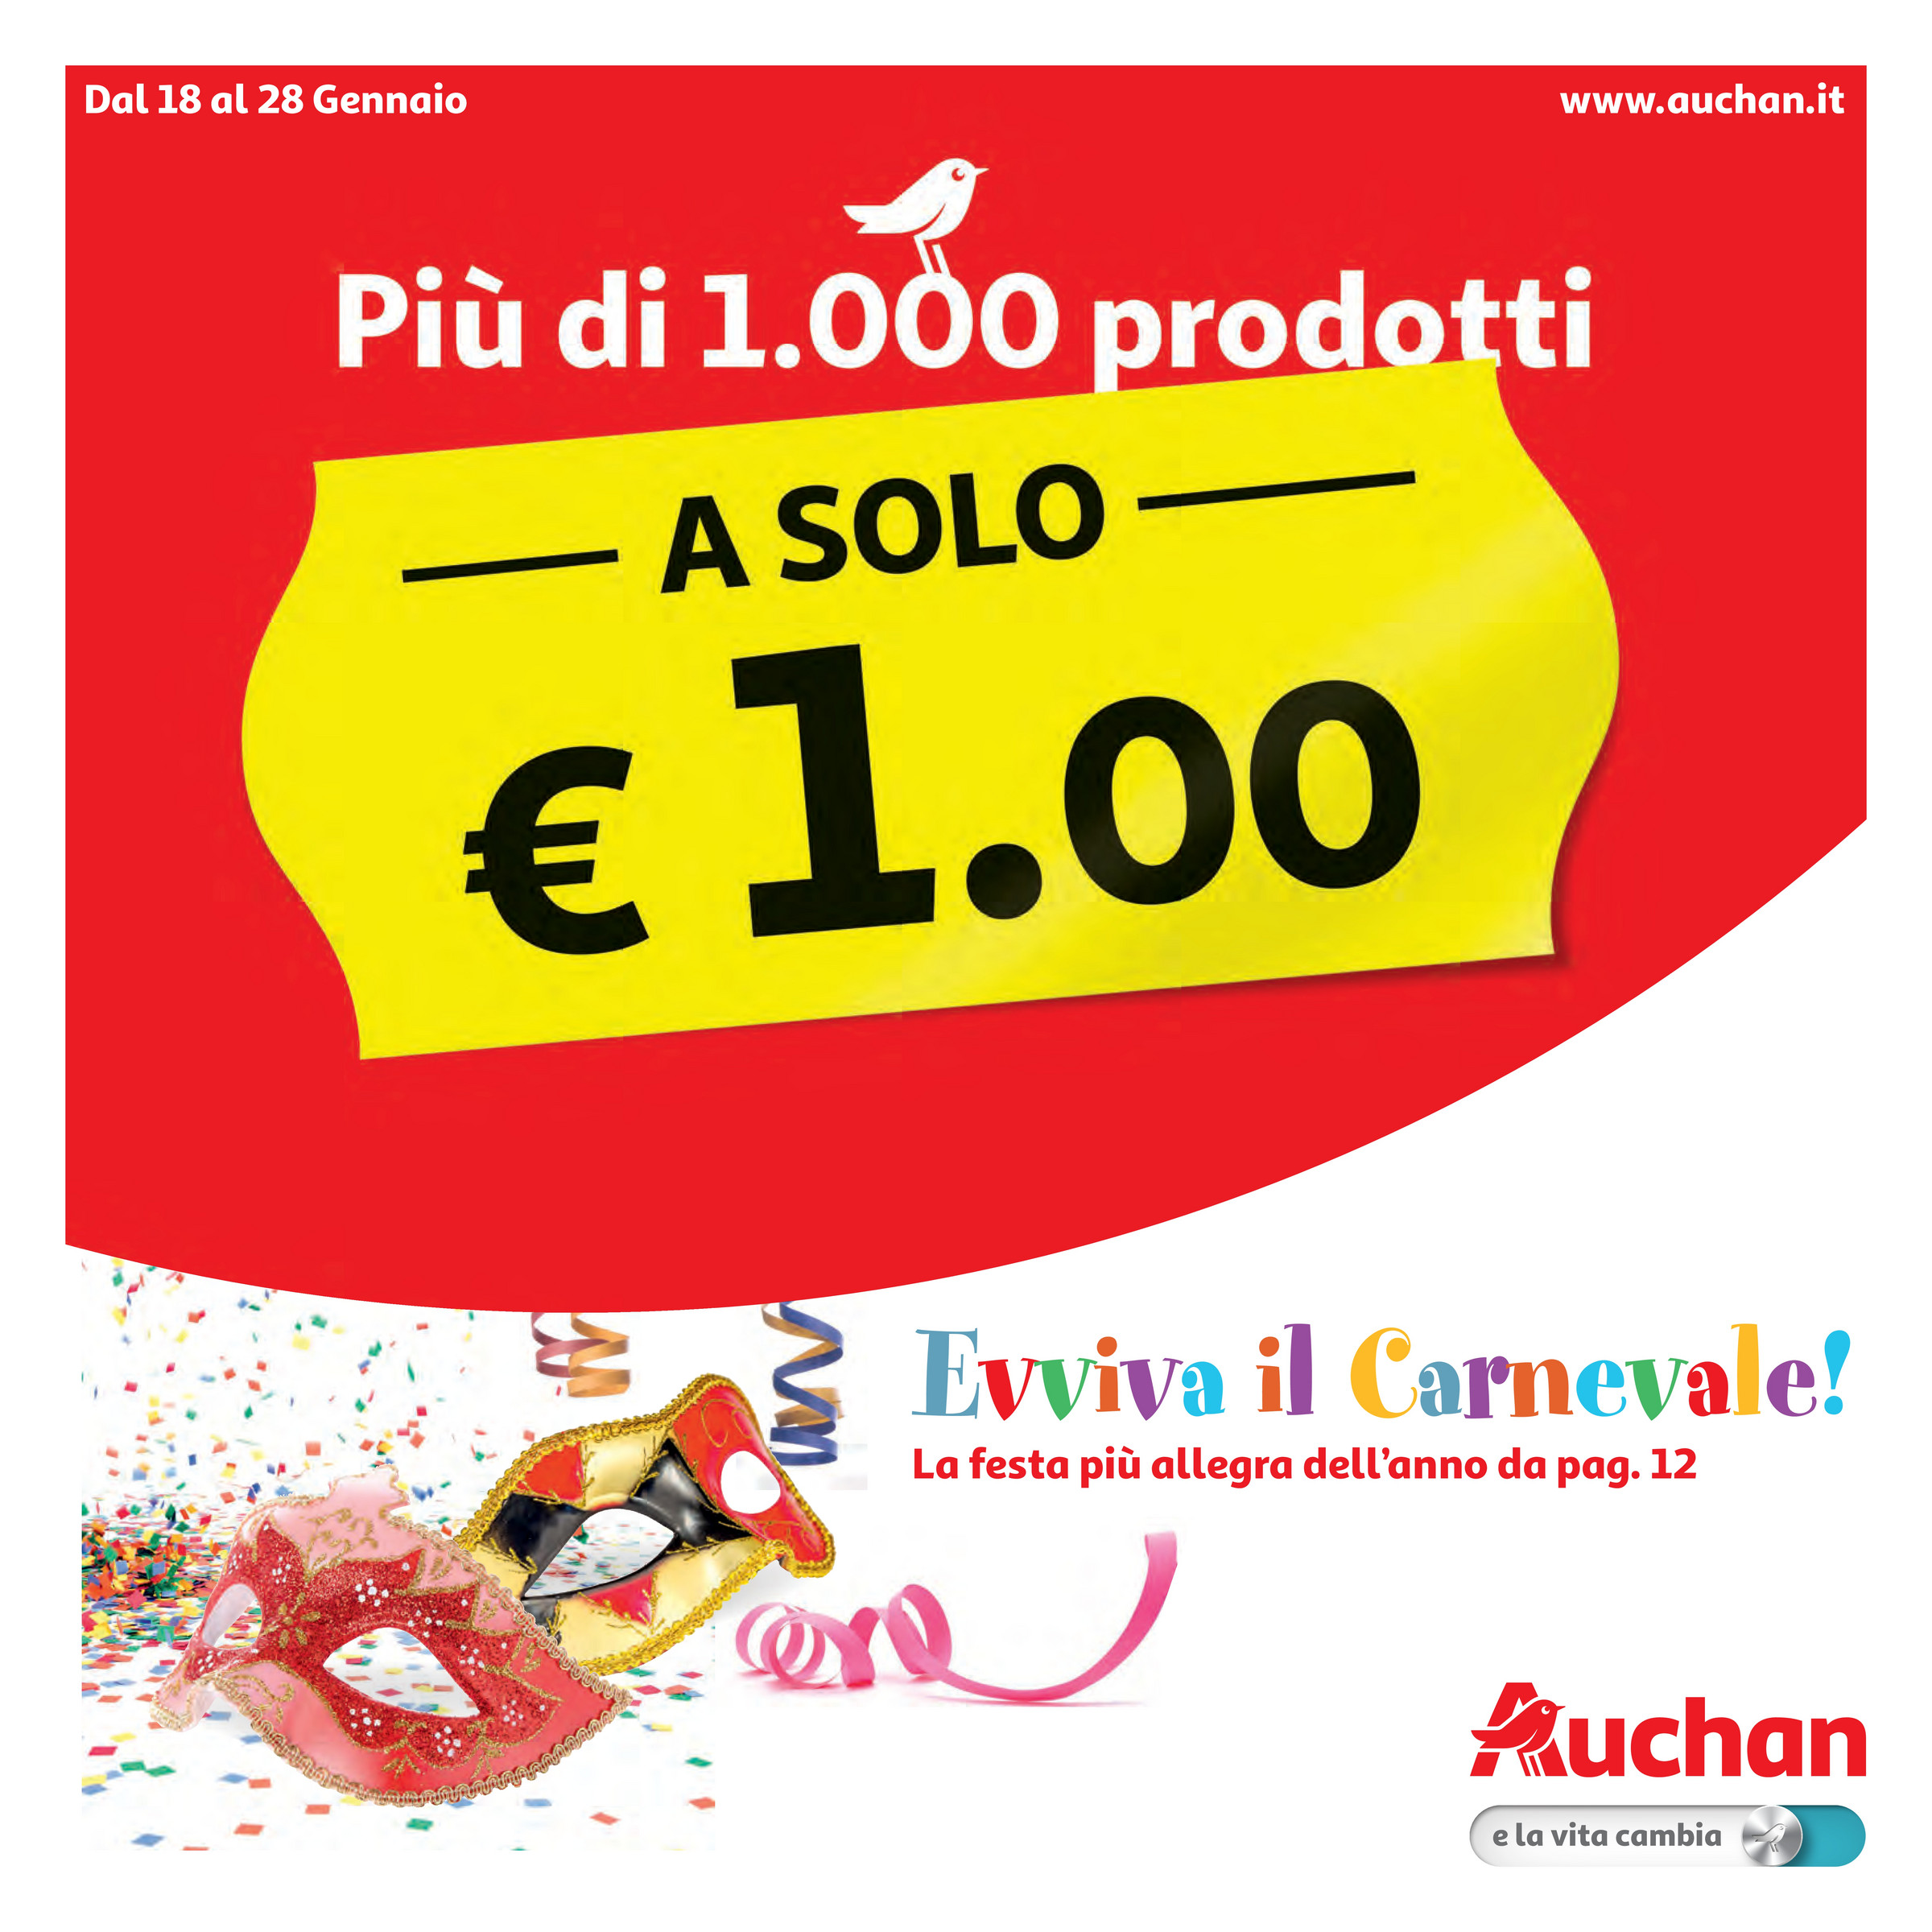 SP - Auchan - Più di 1000 prodotti a solo €1 dal 18 al 28 Gennaio 2018 -  Page 20-21 - Created with Publitas.com